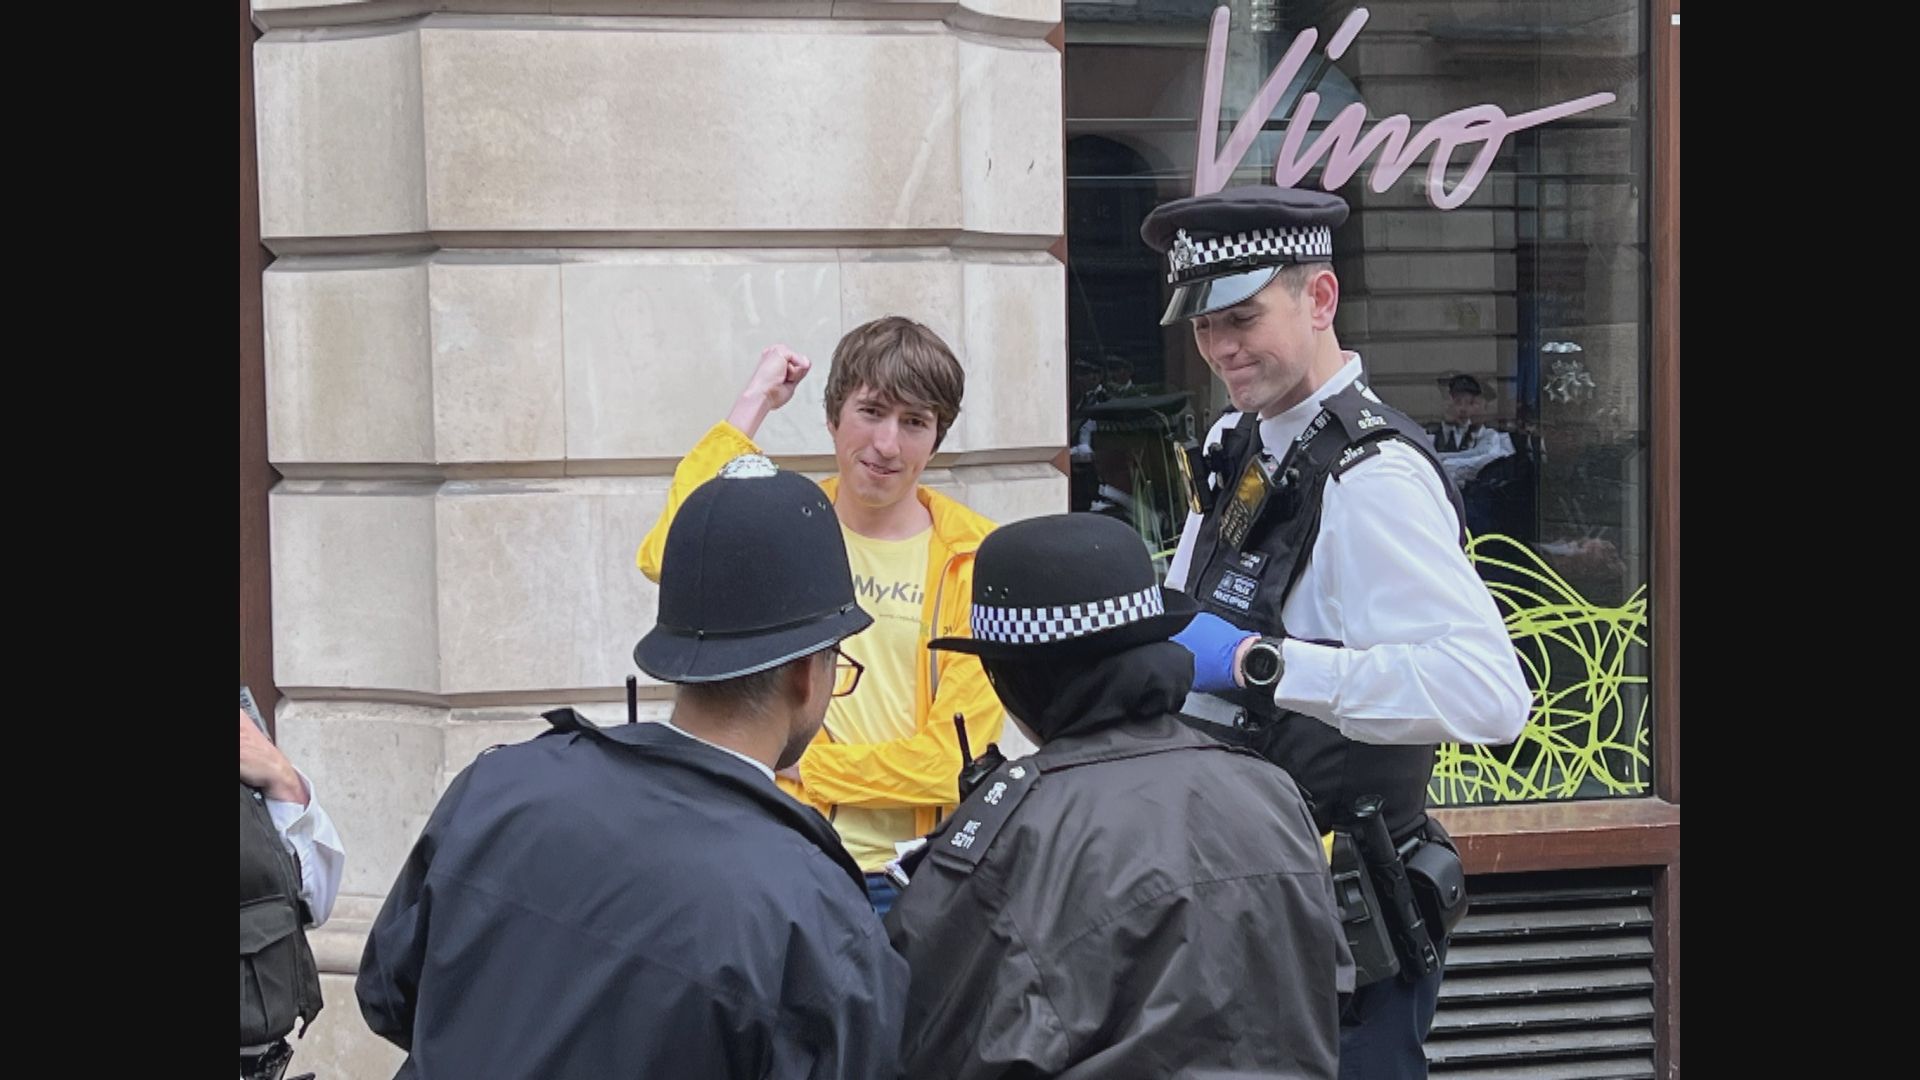 加冕儀式前英警街頭拘捕反君主制示威者